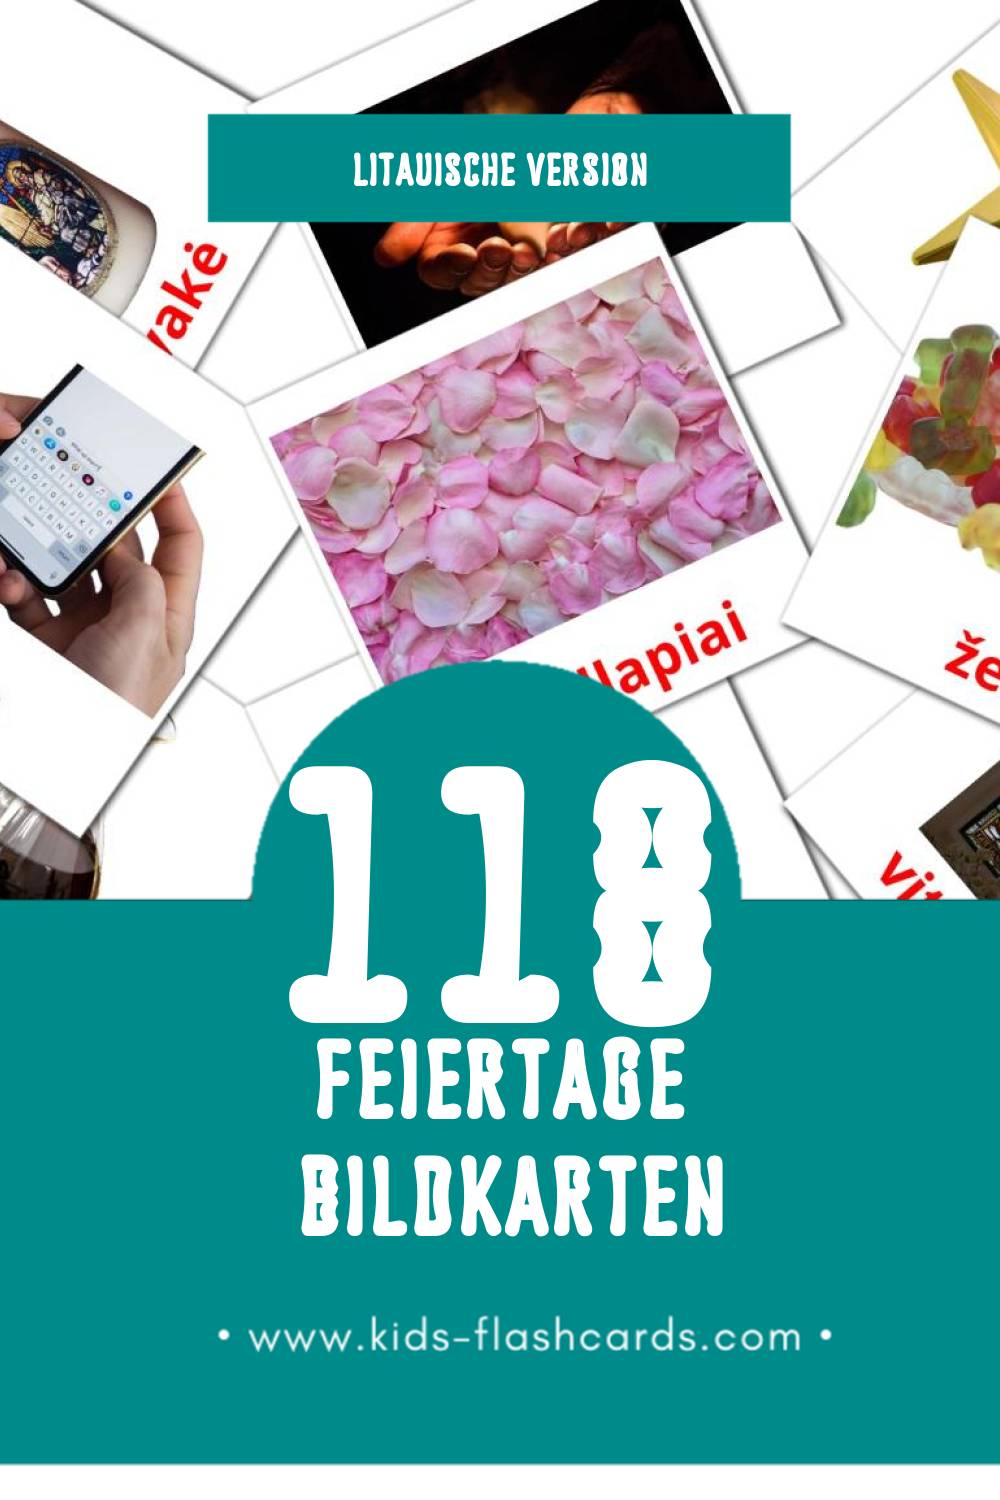 Visual Šventės Flashcards für Kleinkinder (118 Karten in Litauisch)